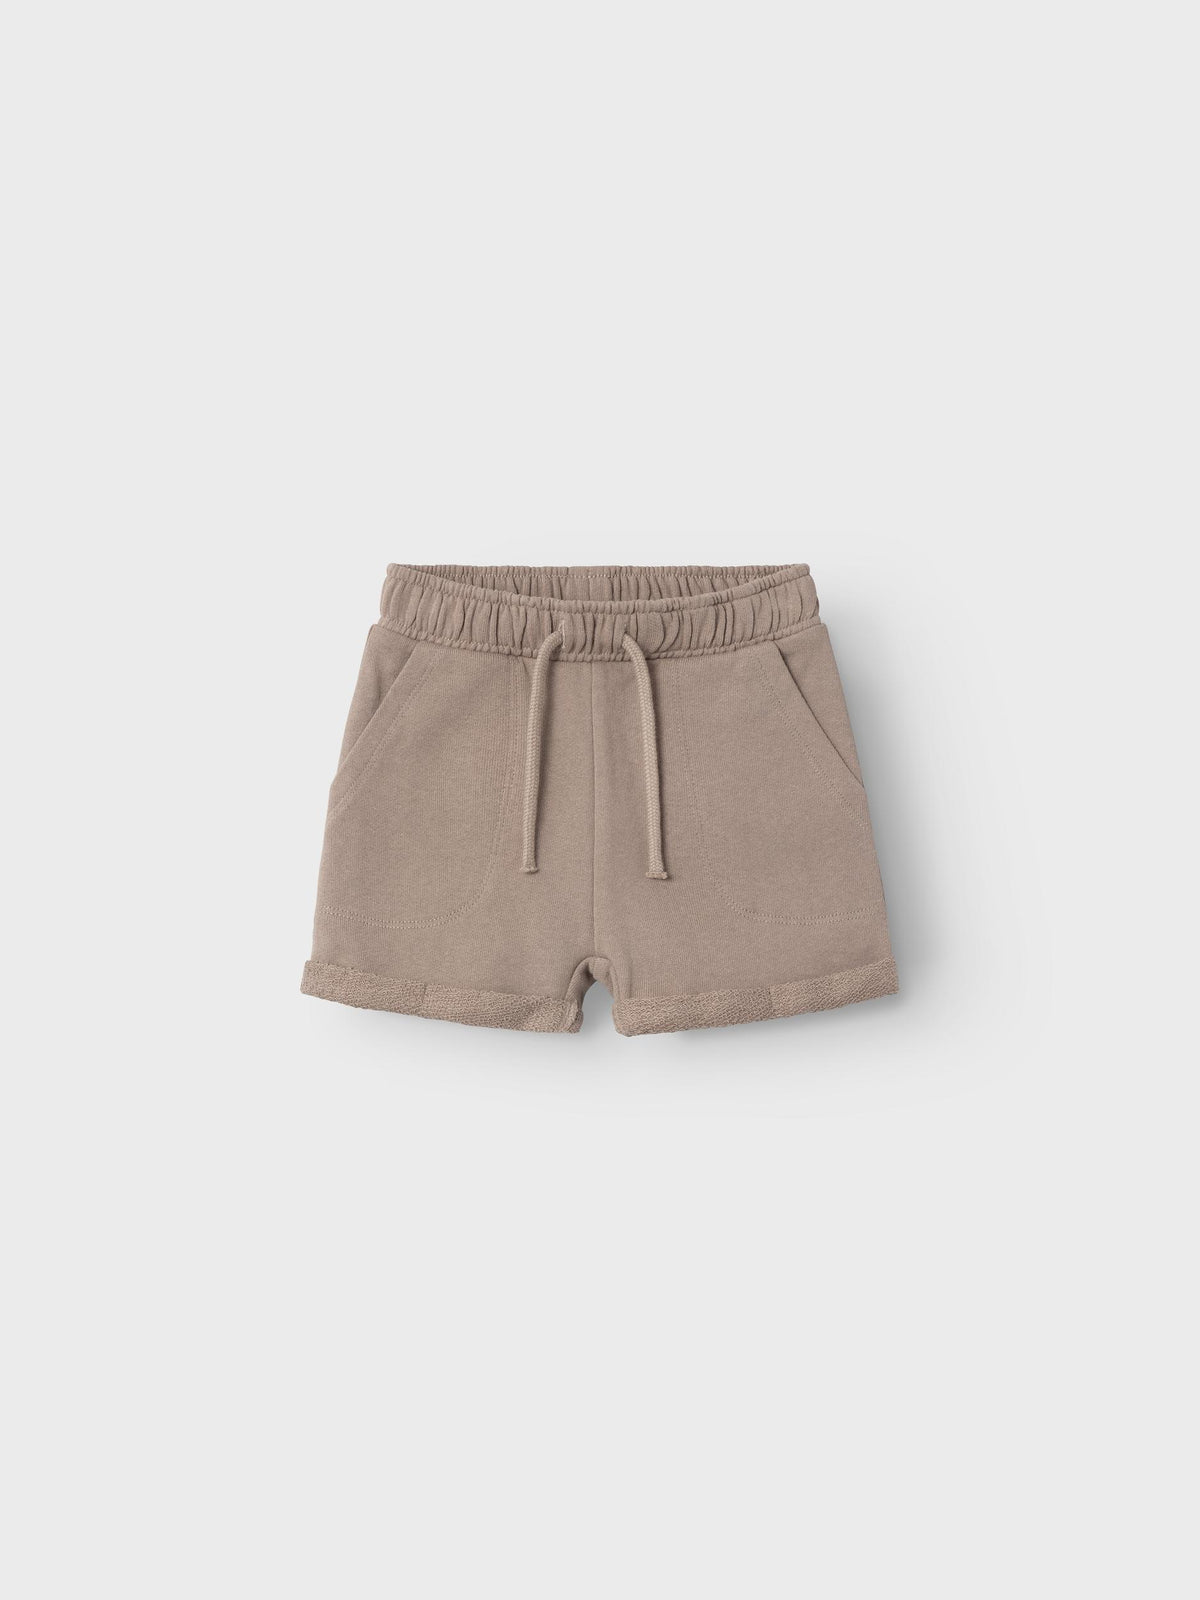 Jobo sweat shorts mocha, Lil atelier